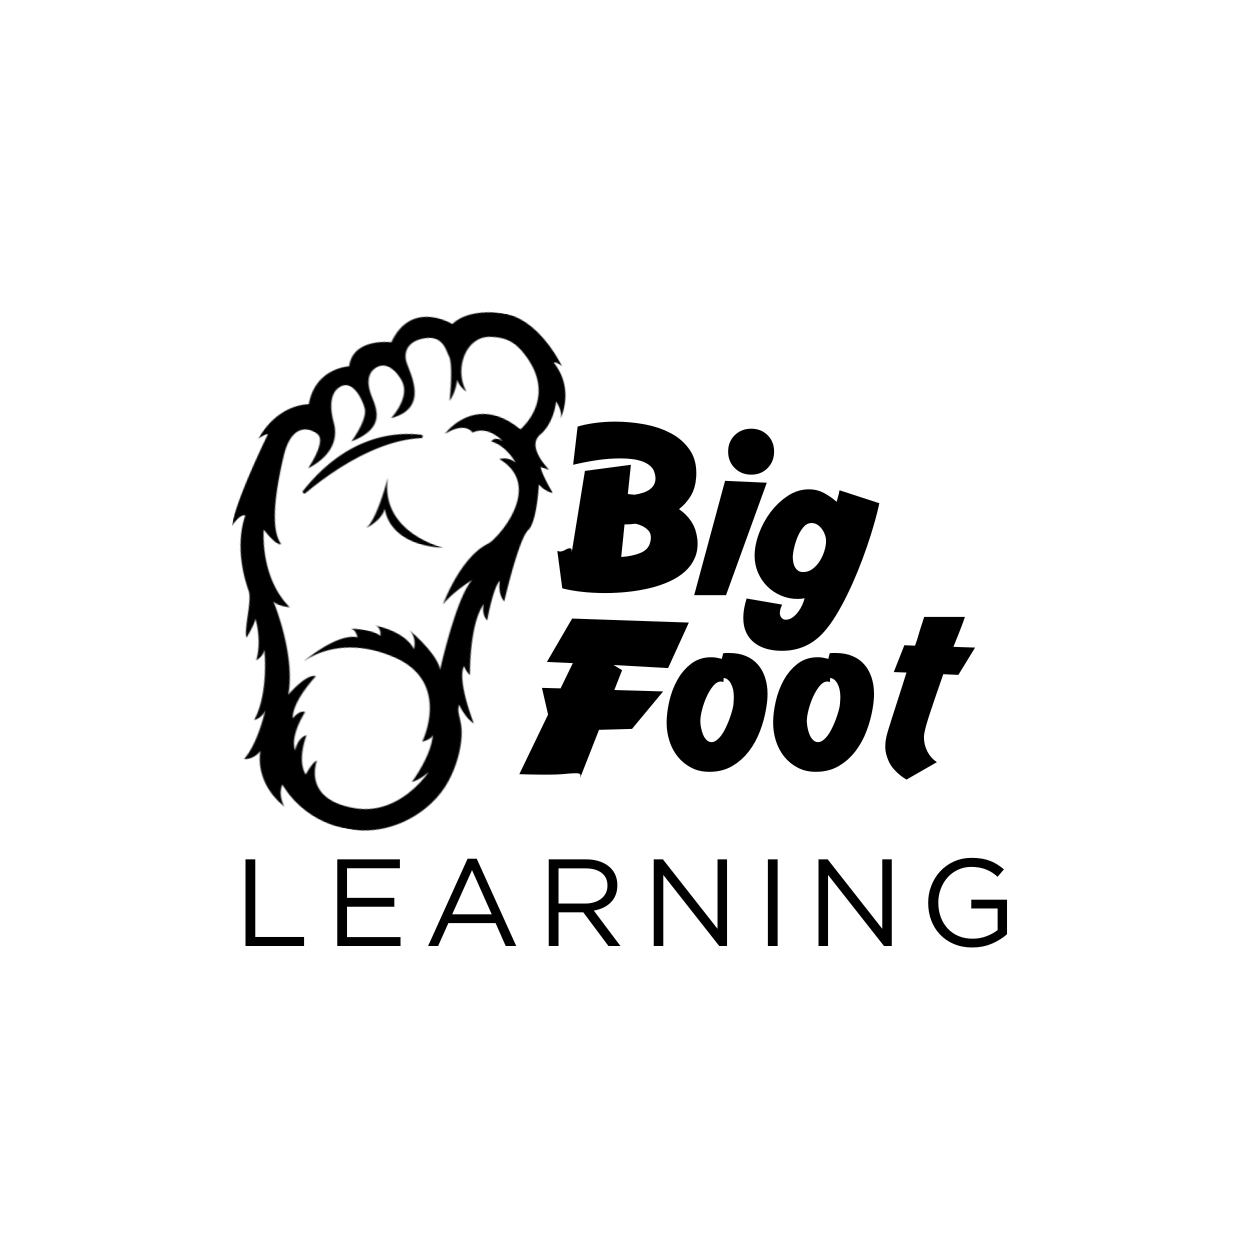 Black Big Foot Logo (with Circle)